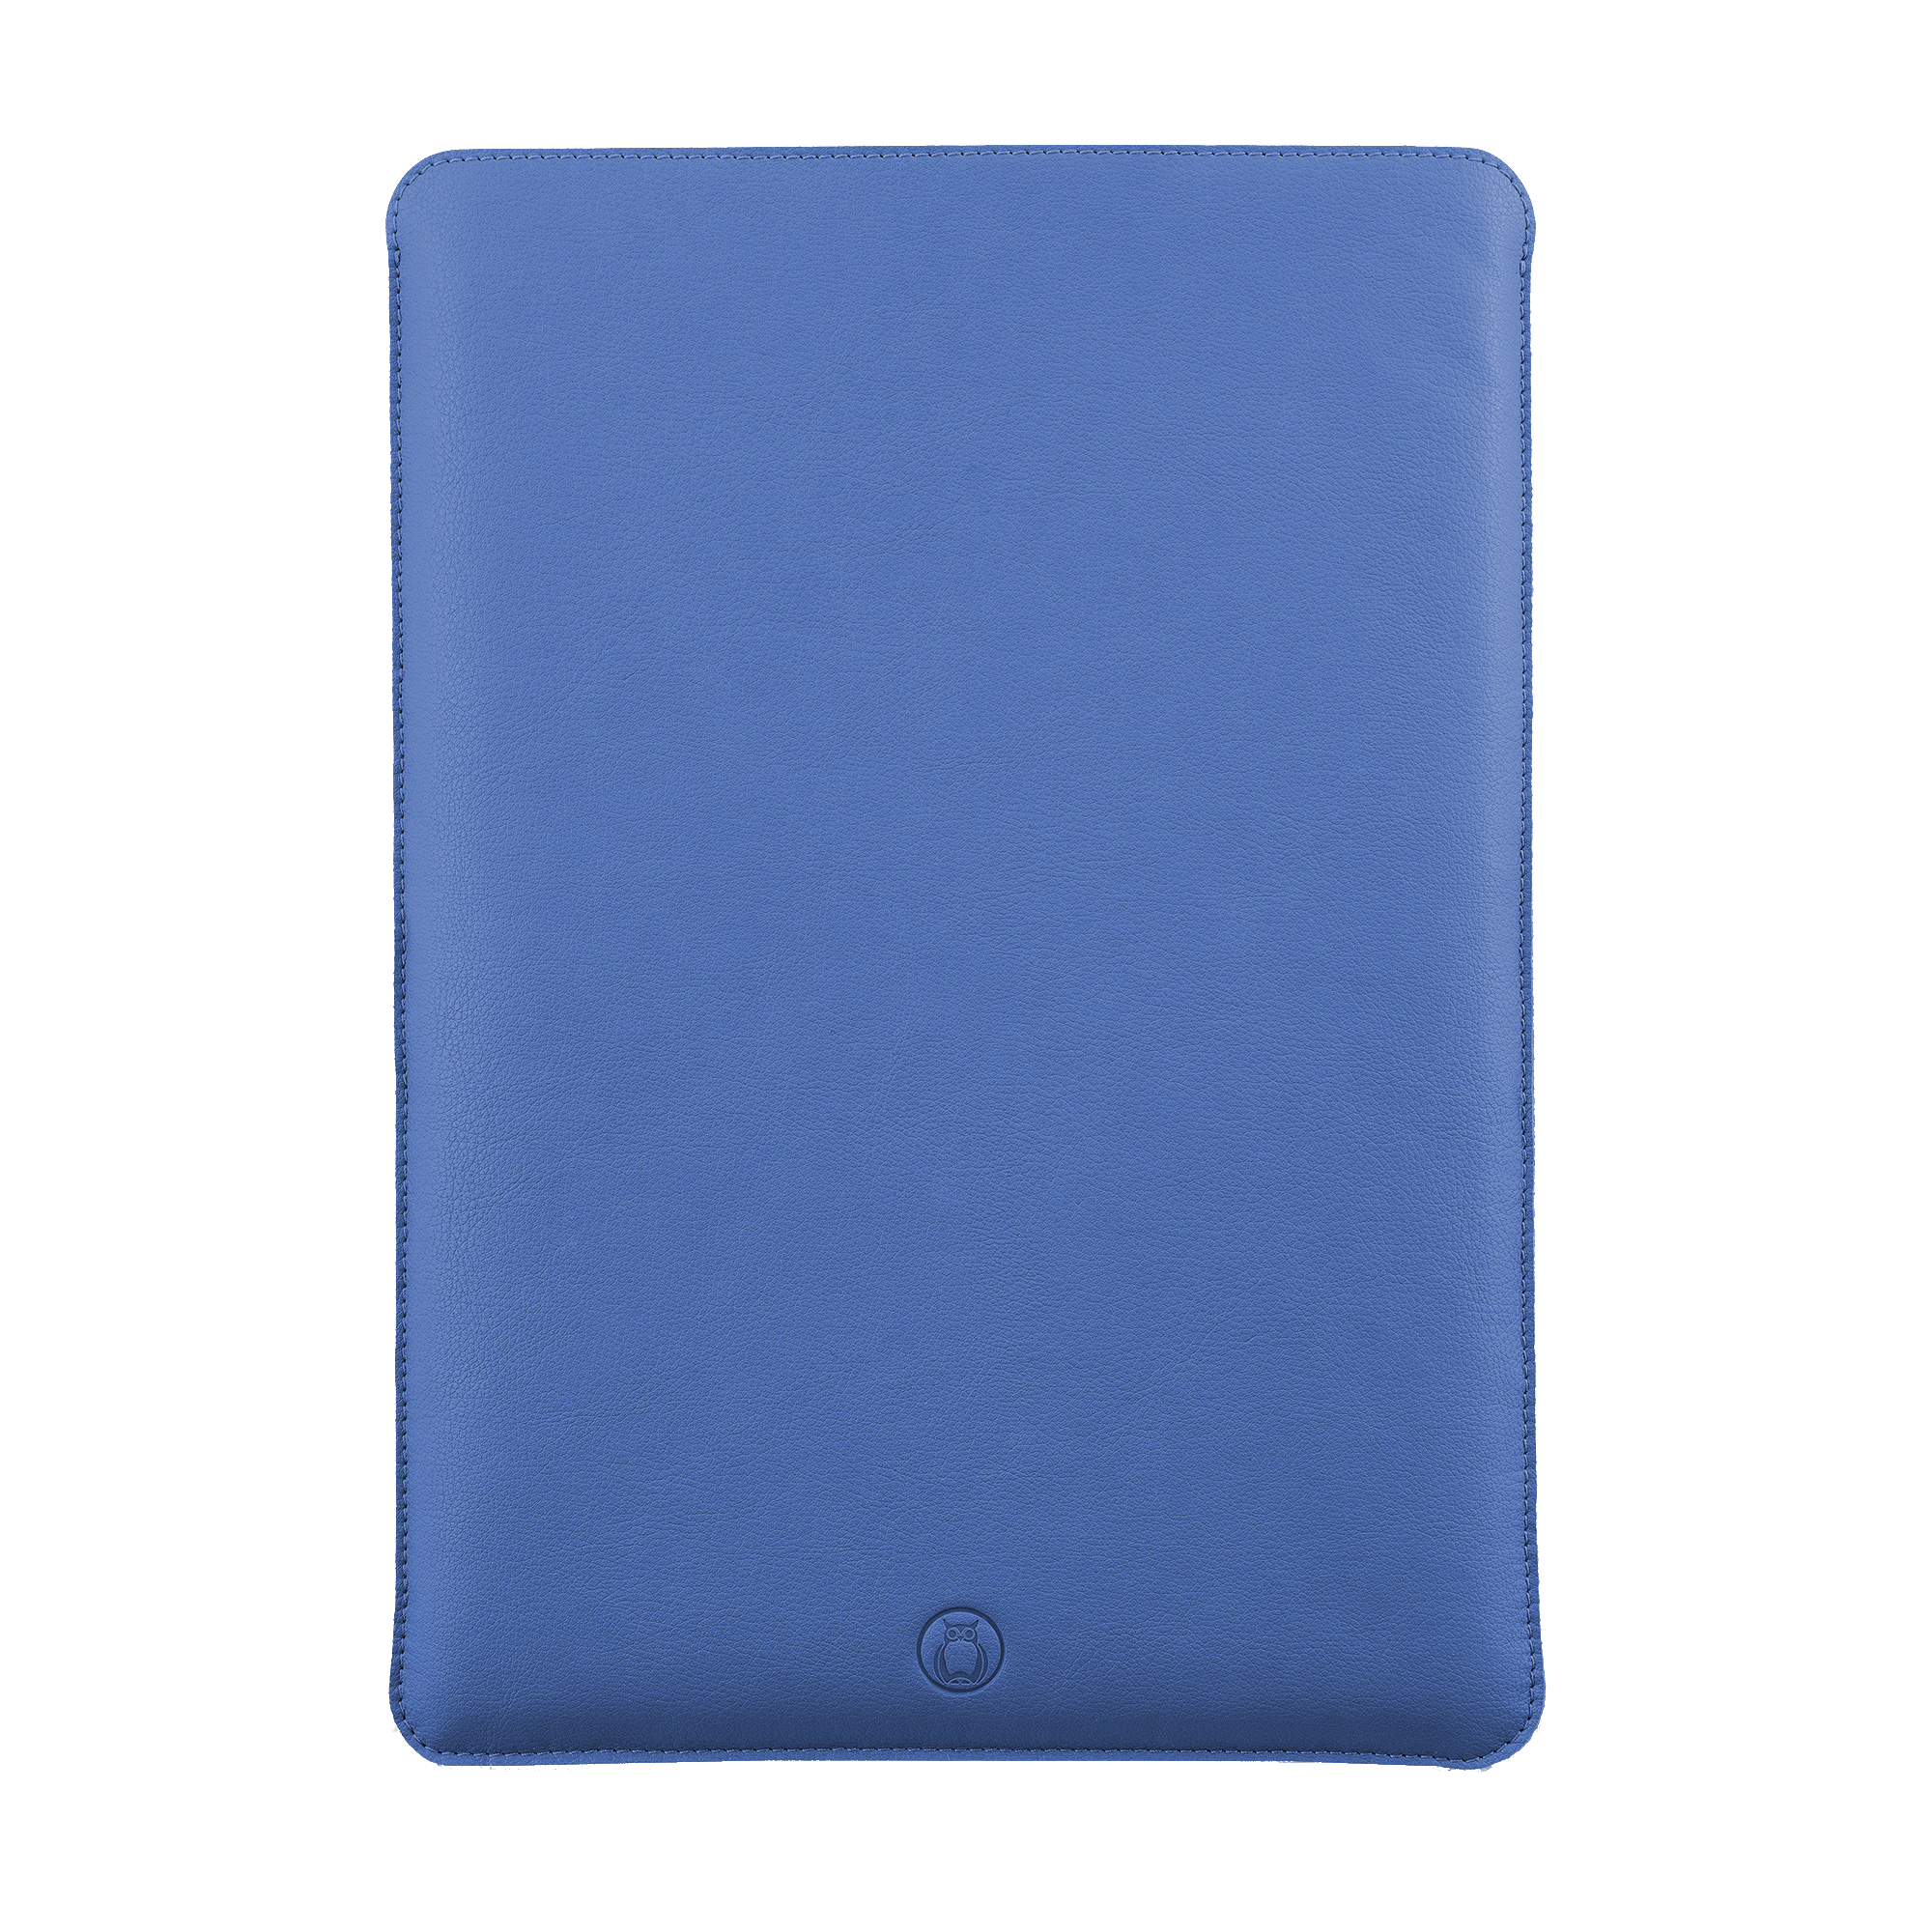 Husa laptop MacBook 13 inch UNIKA piele PU cu lana din fibre naturale albastru sanito.ro